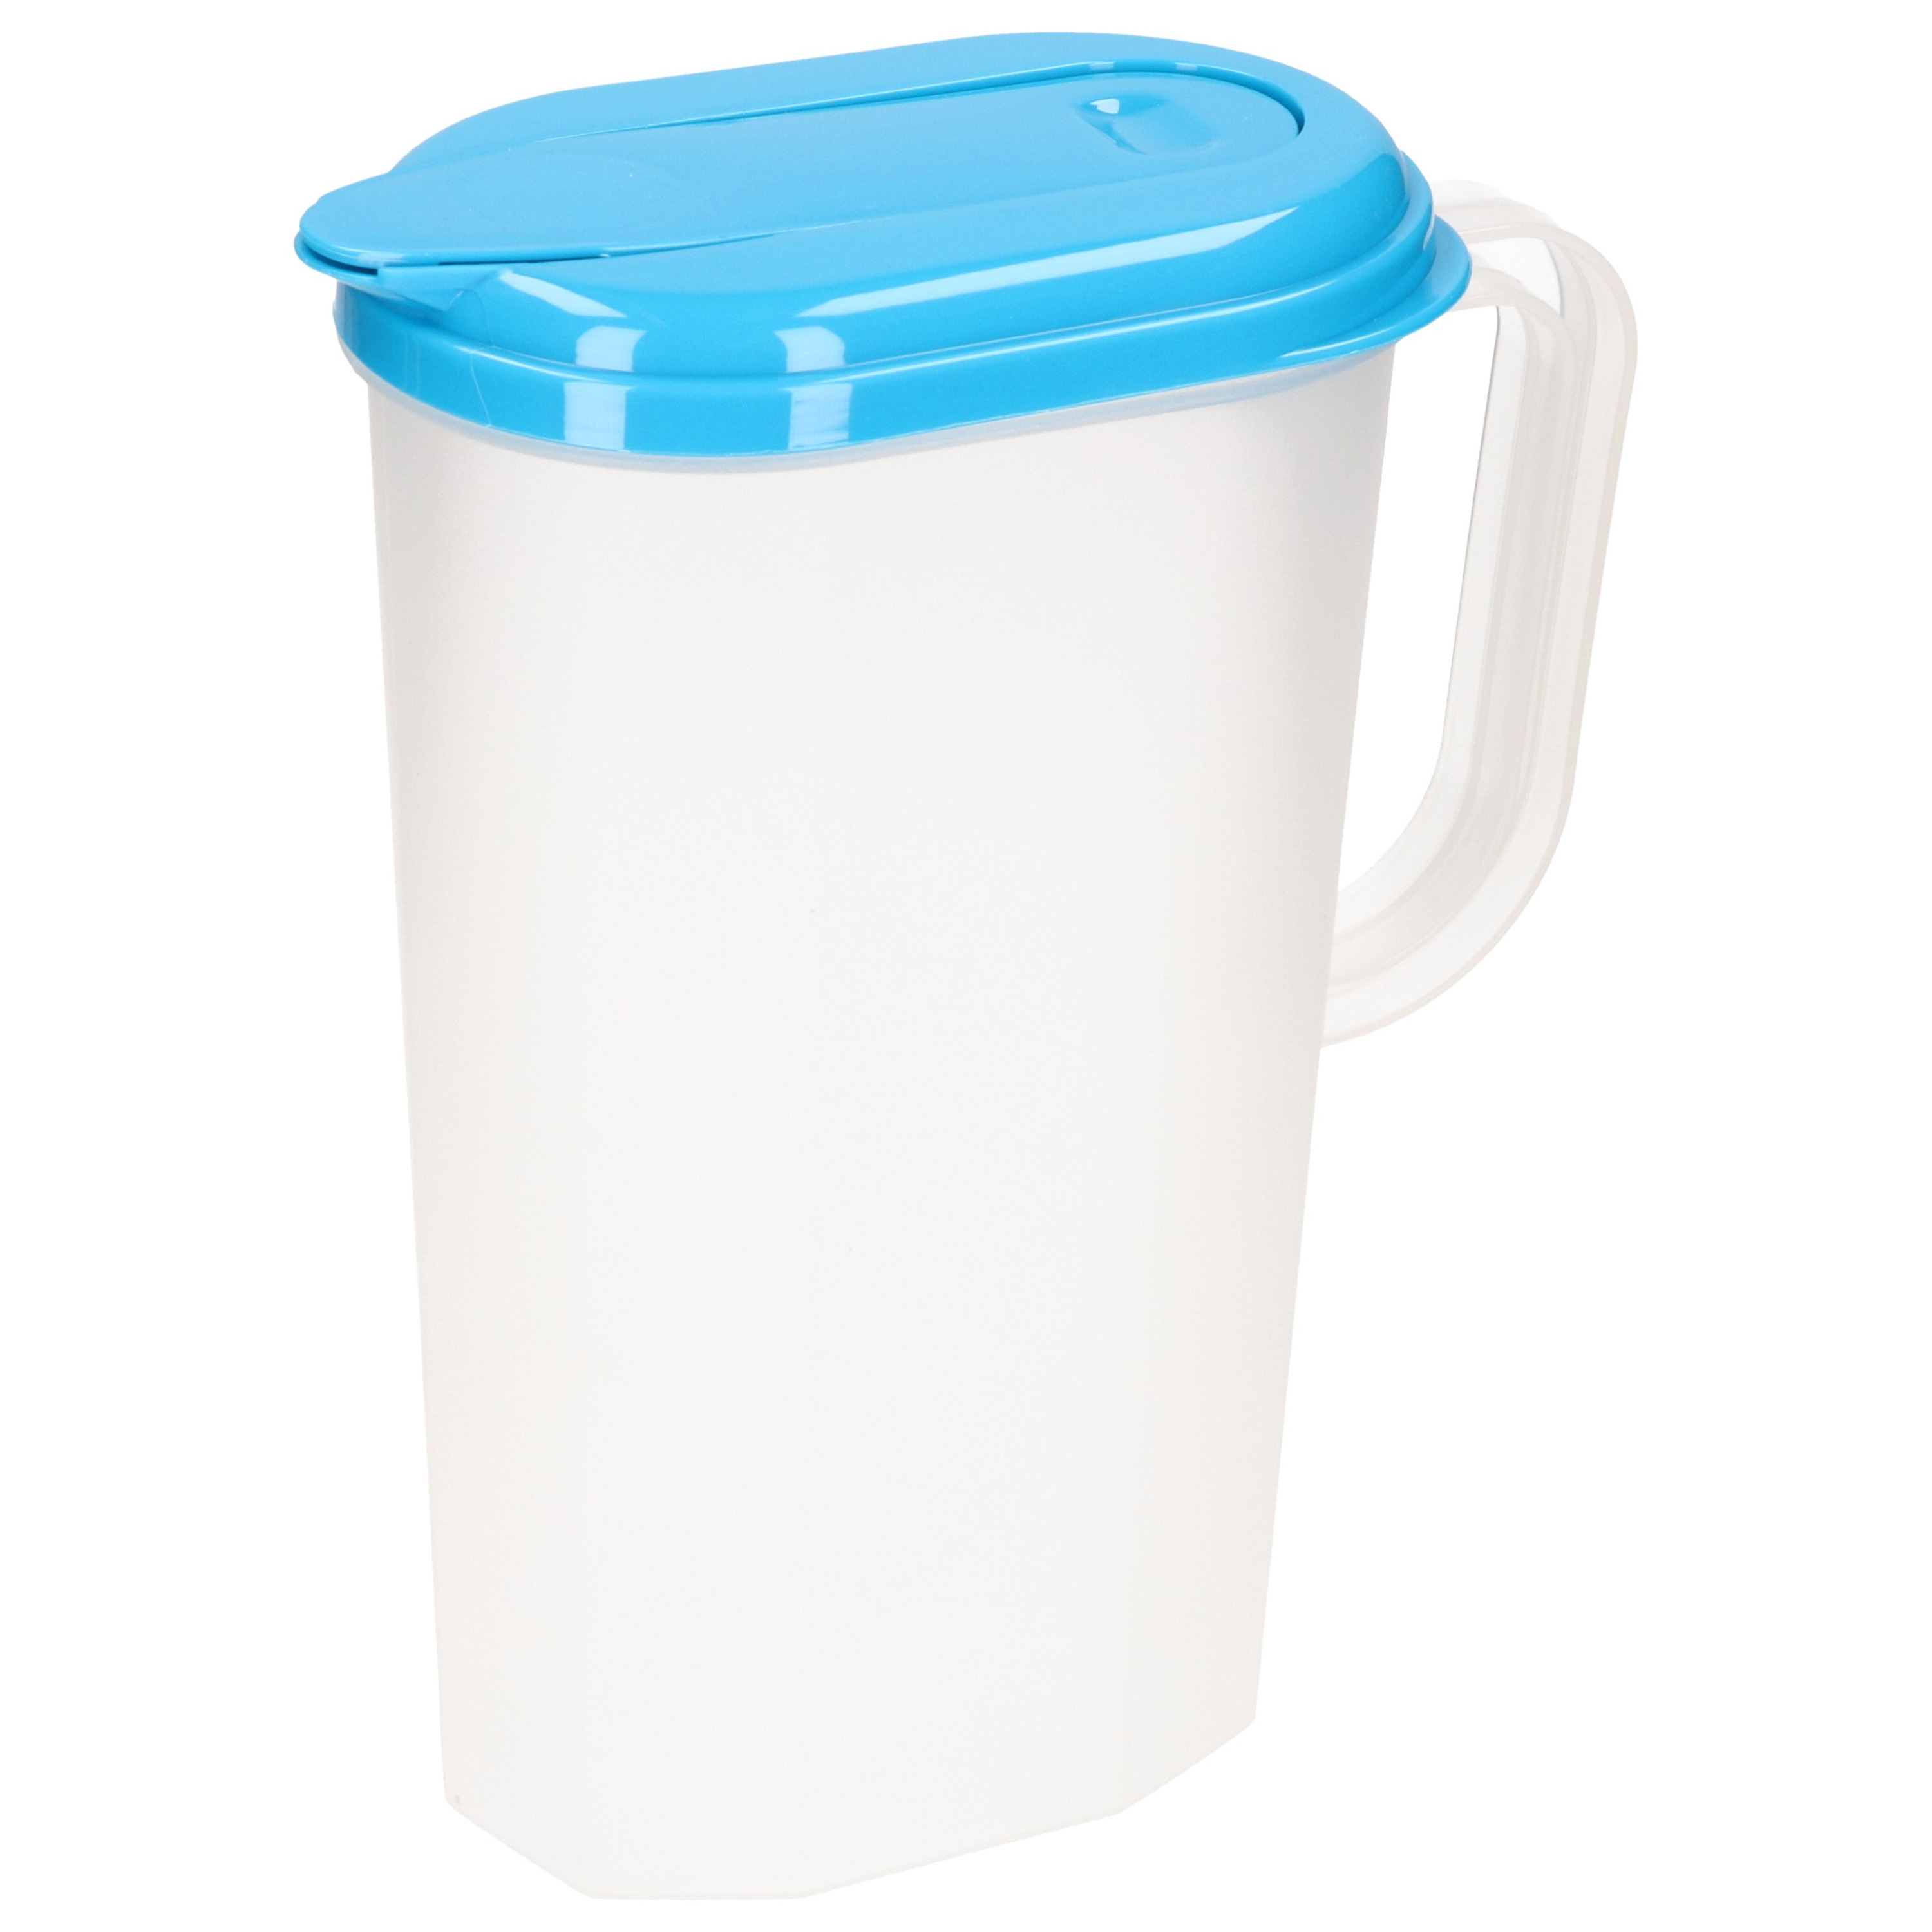 PlasticForte Waterkan/sapkan transparant/blauw met deksel 2 liter kunststof -